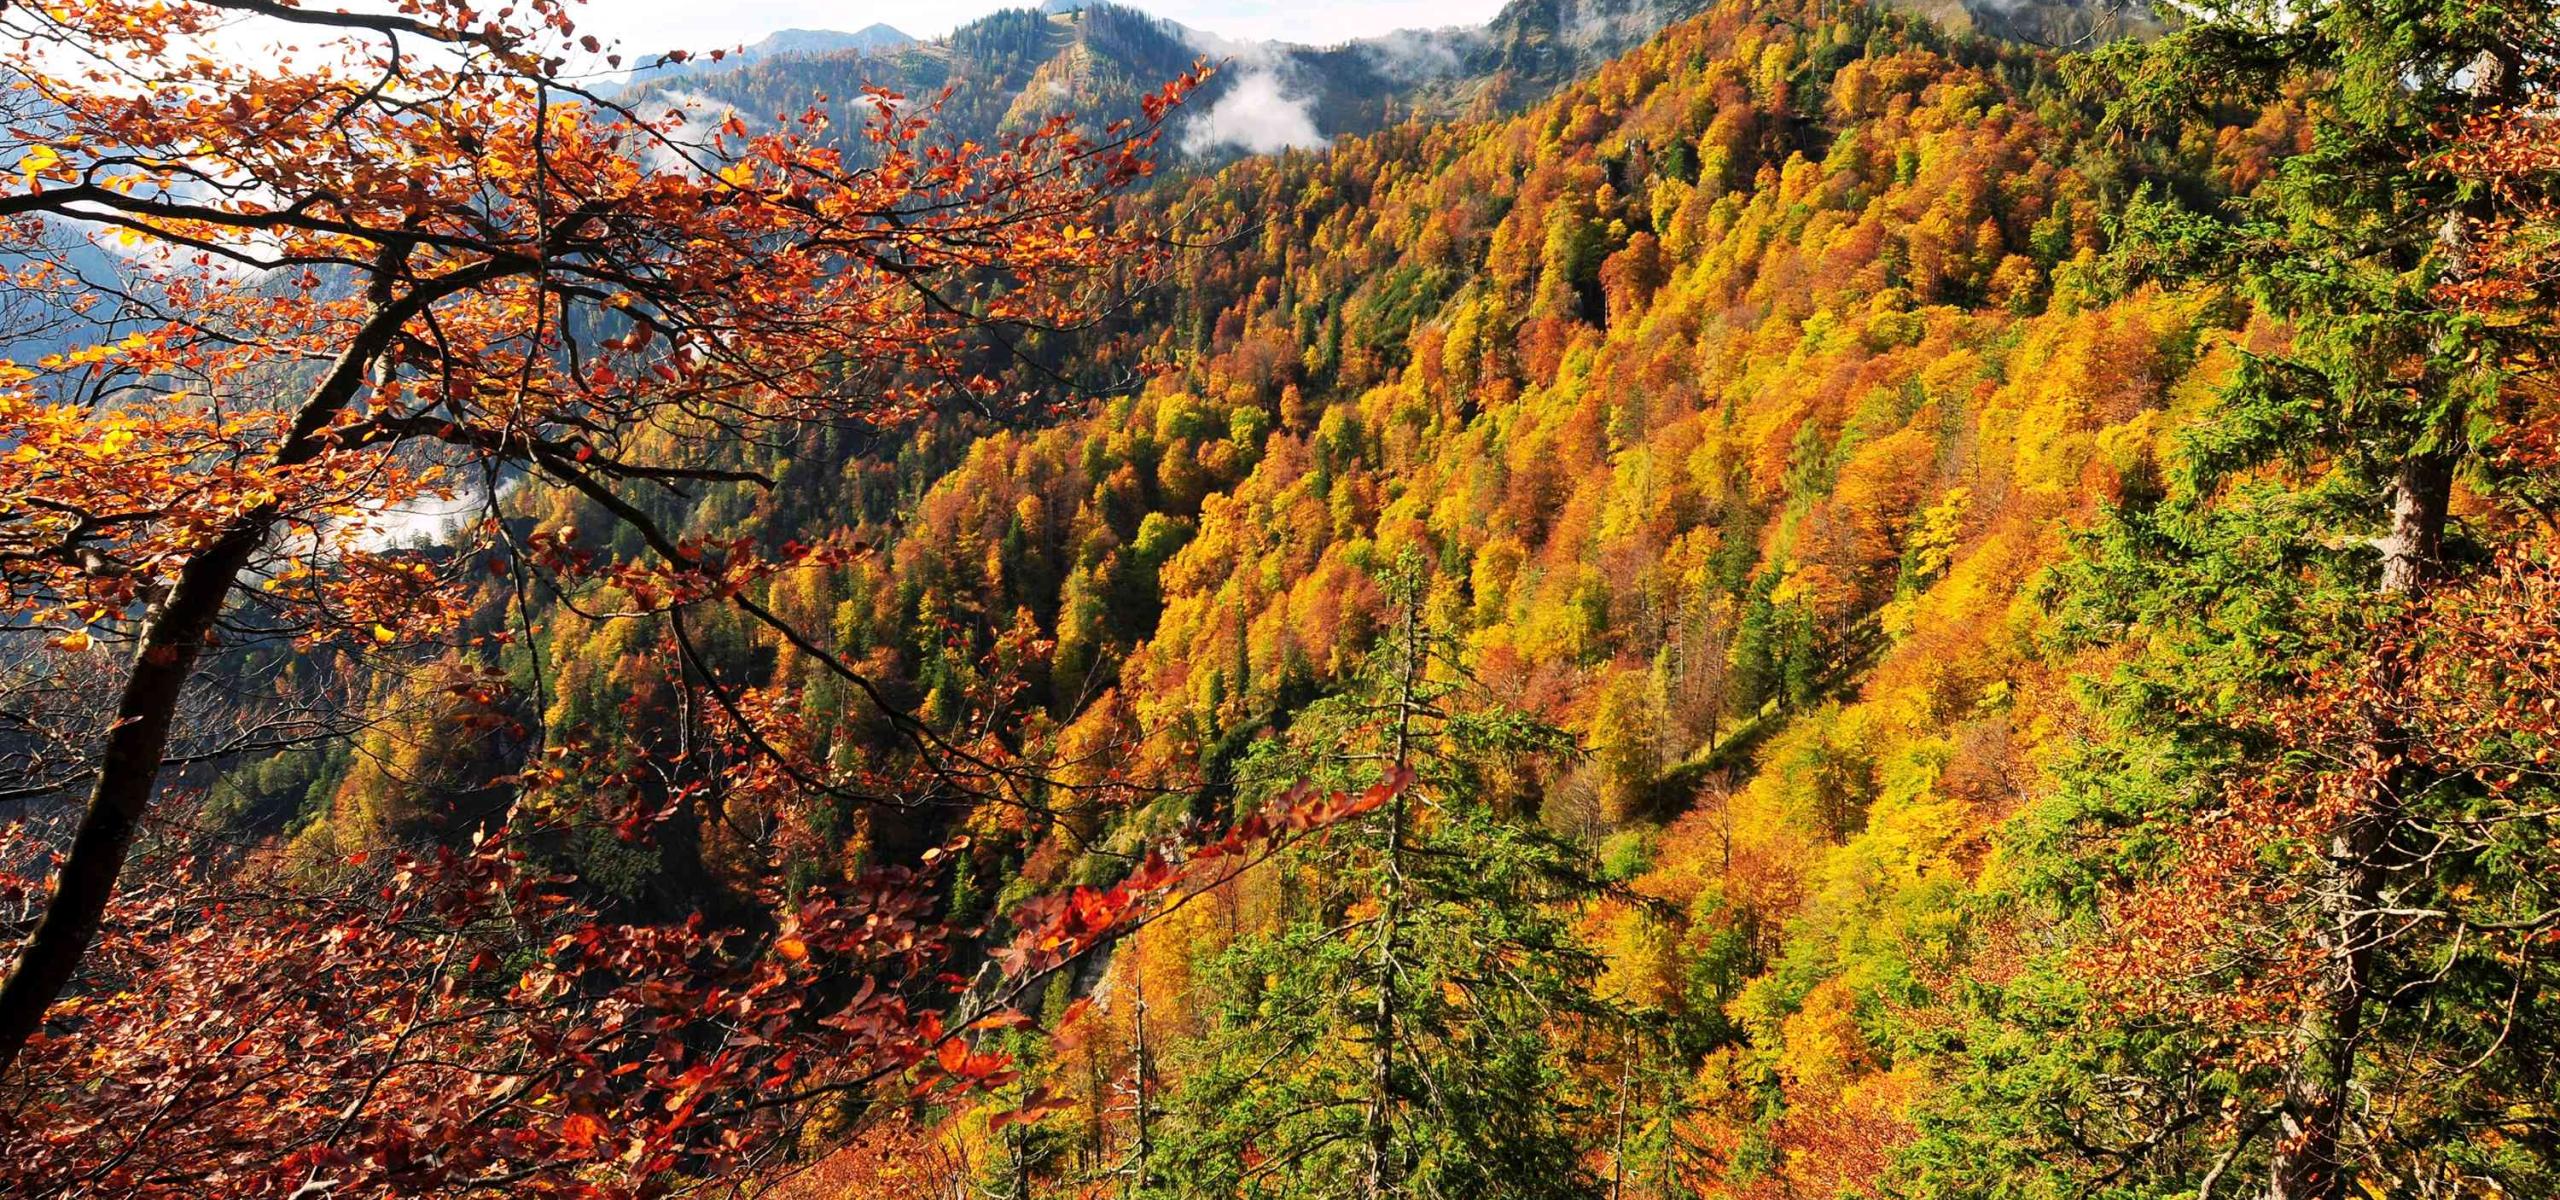 Podzimně zbarvený bukový les